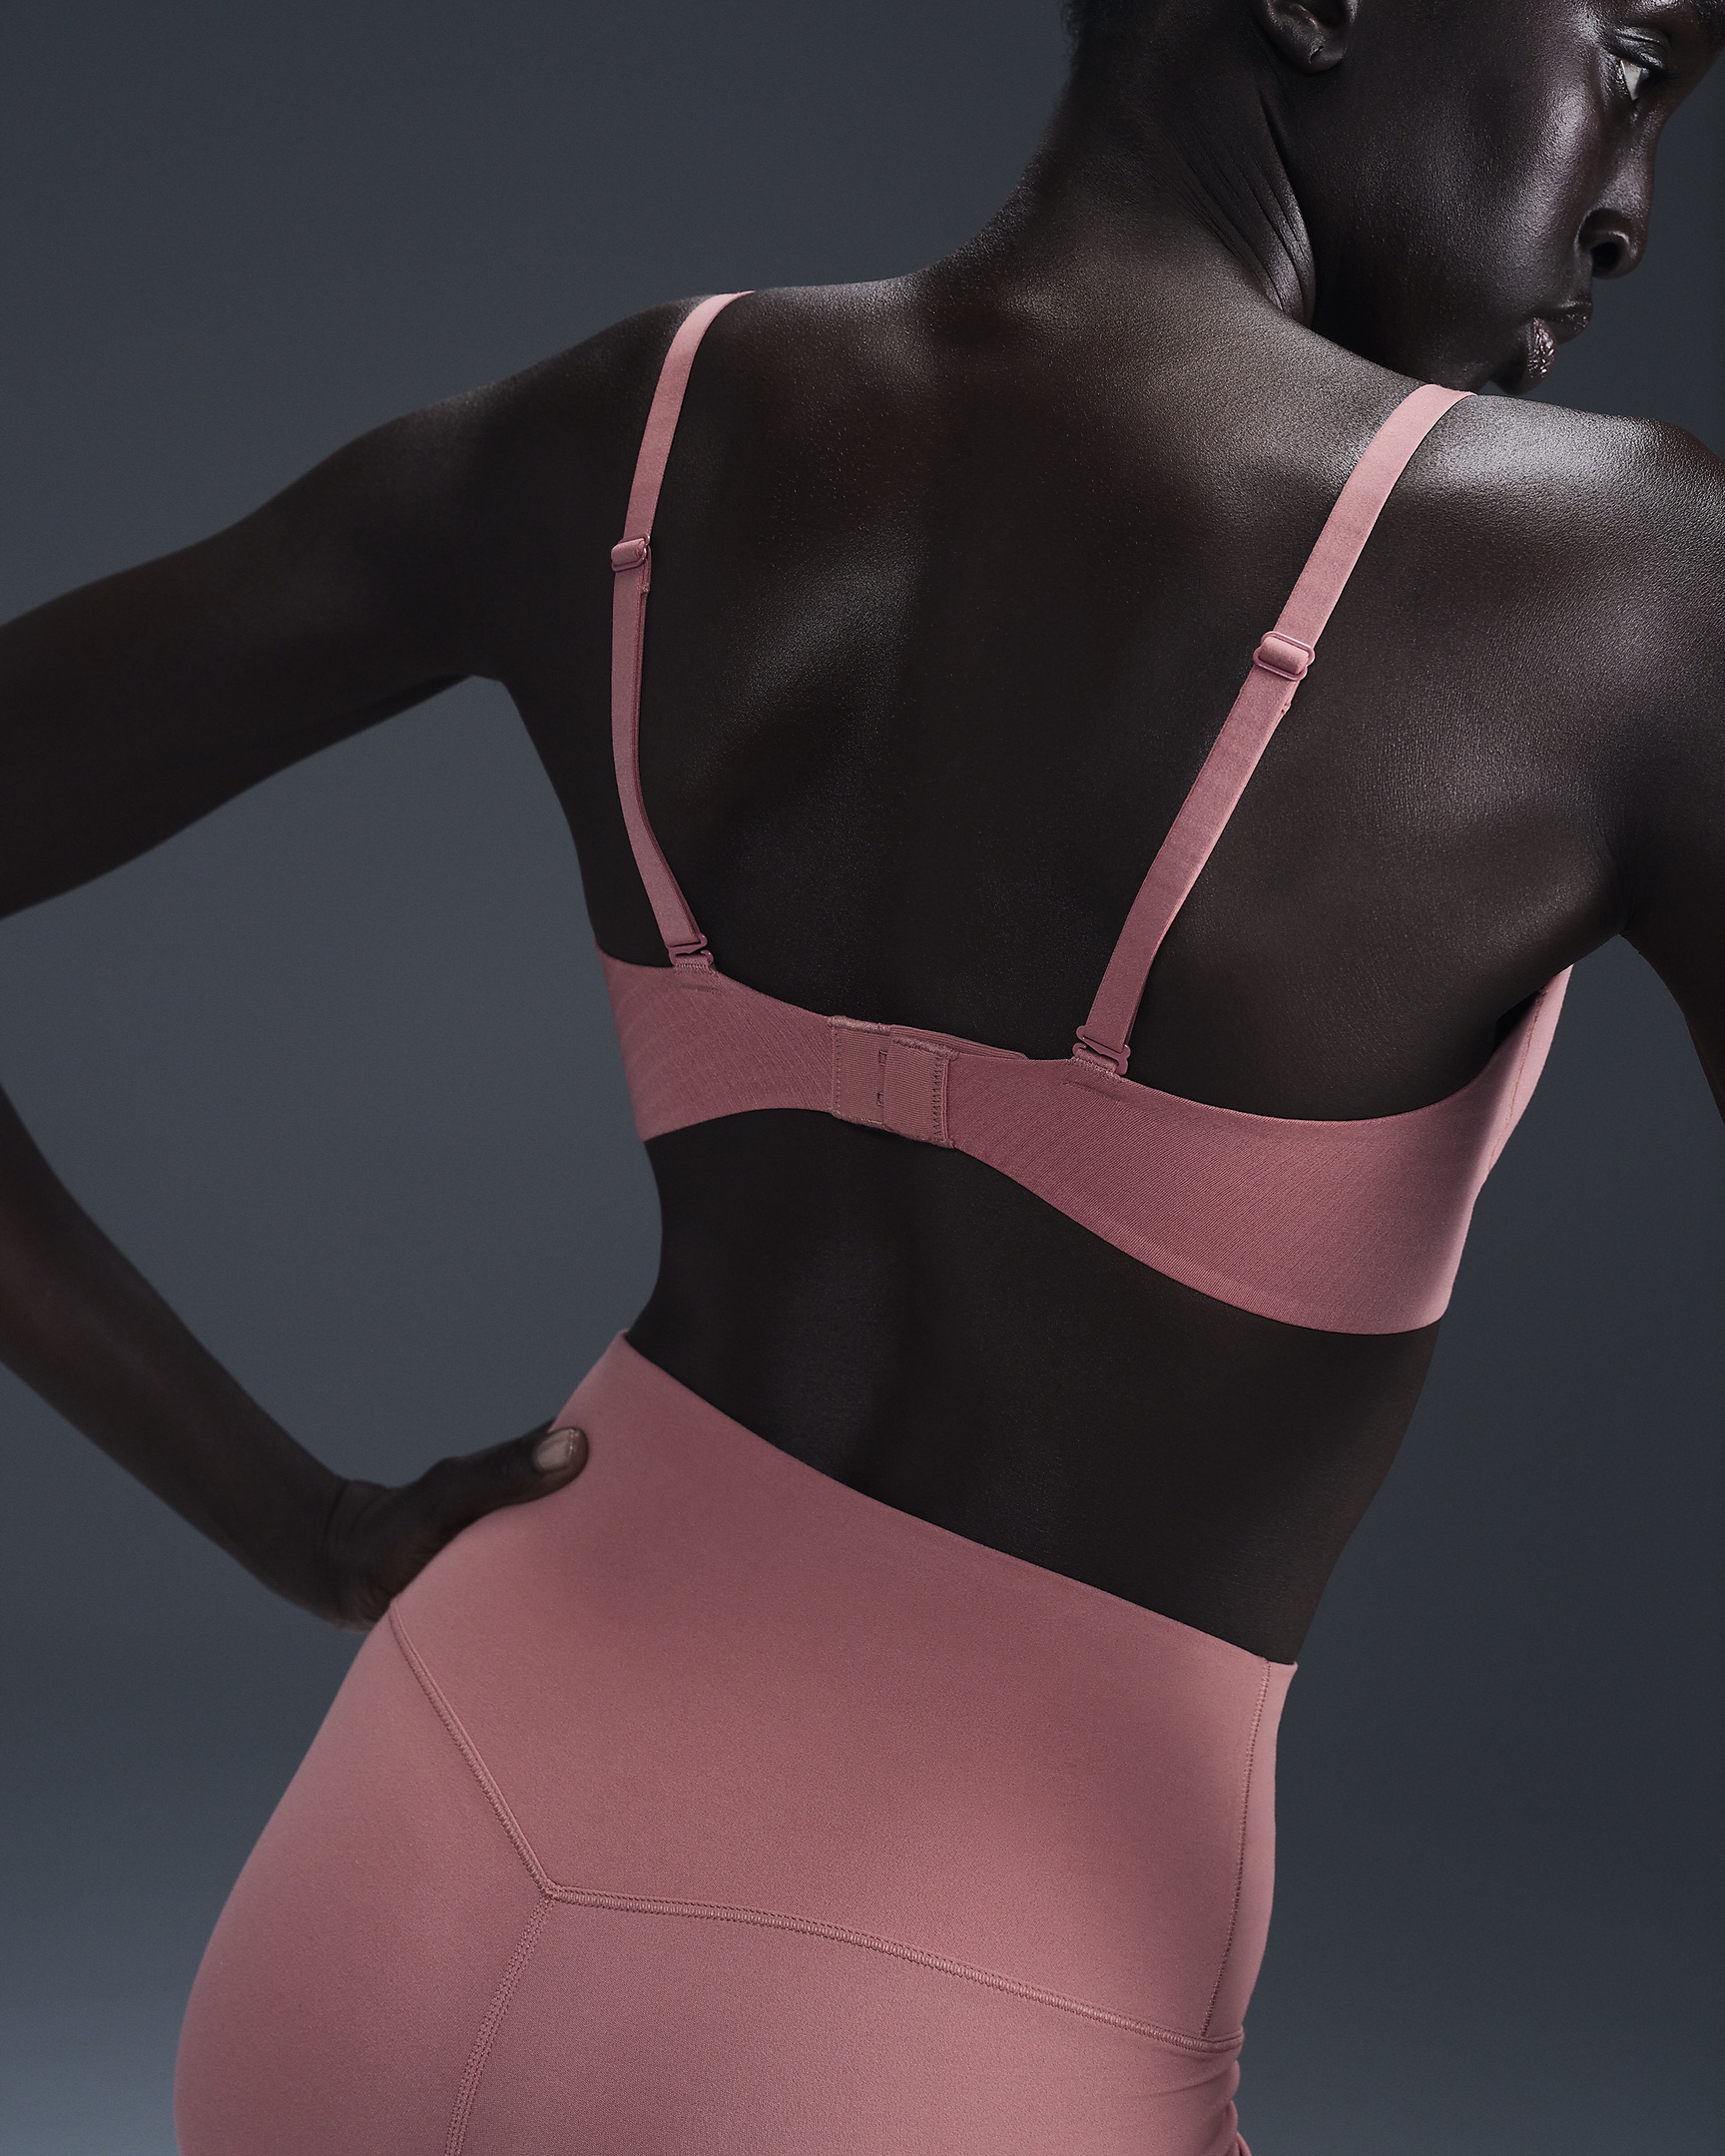 Nike Alate Minimalist Women's Light-Support Padded Convertible Sports Bra - 3